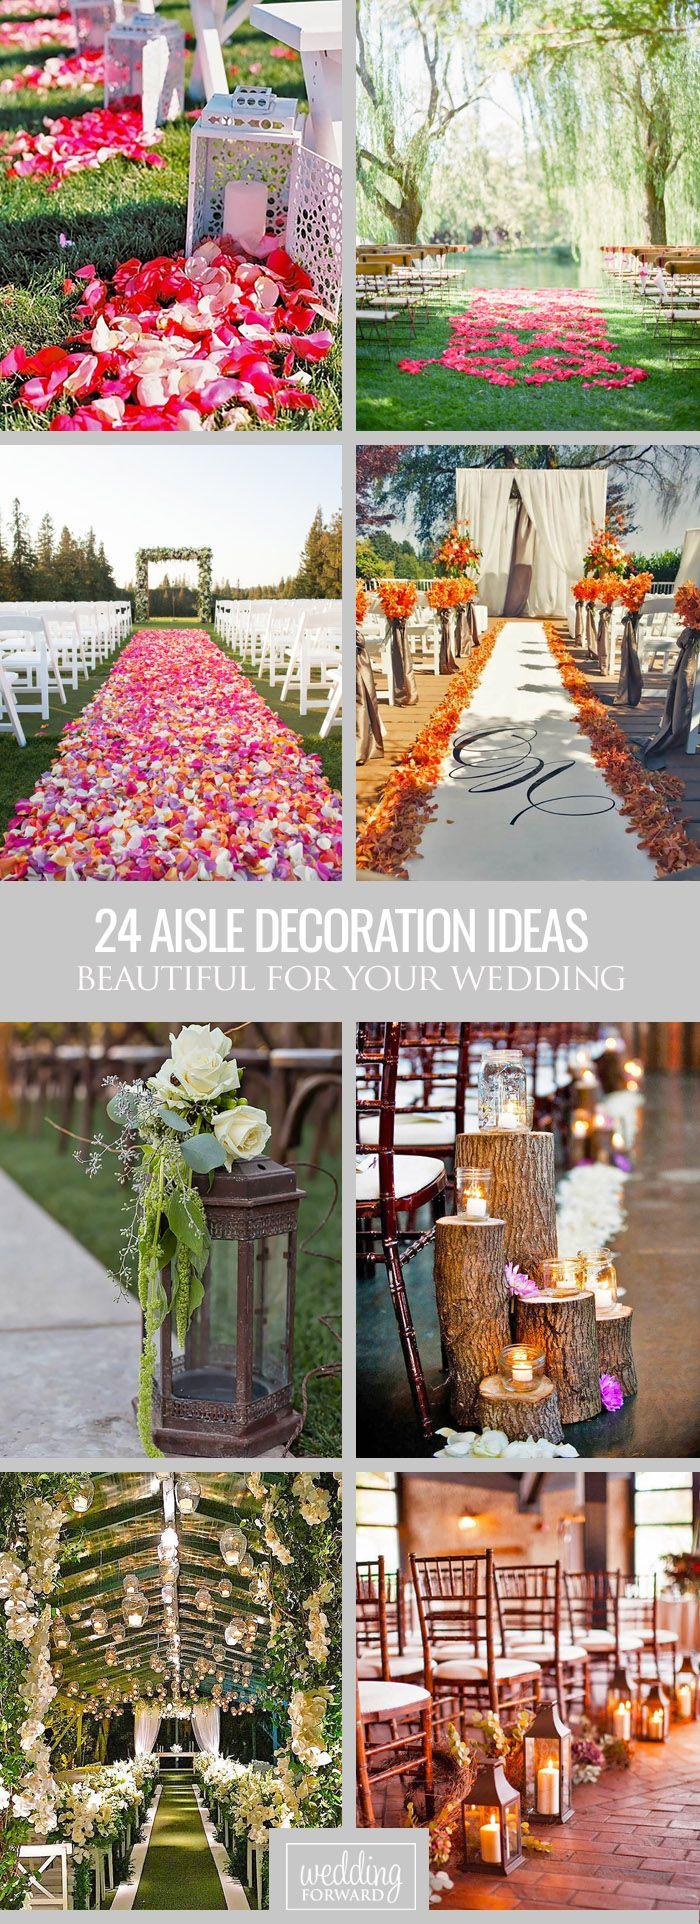 Wedding - 24 Beautiful Wedding Aisle Decoration Ideas